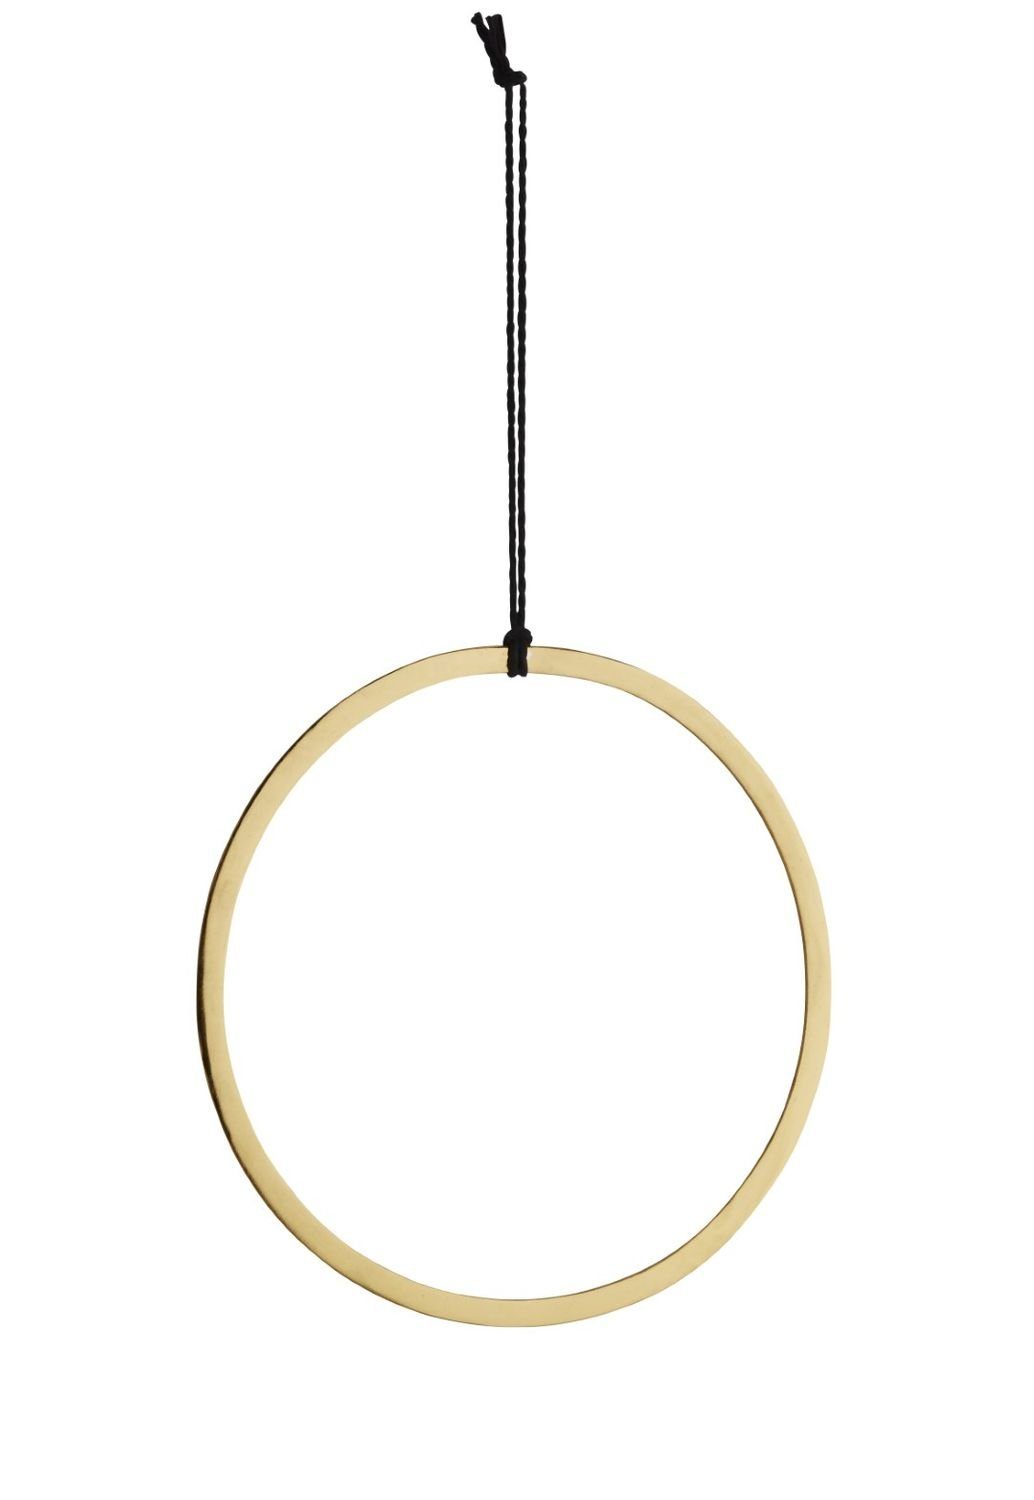 NaDeco Dekoobjekt Metallring in Gold, flach, Durchmesser 28cm, mit Kordel zum Aufhängen